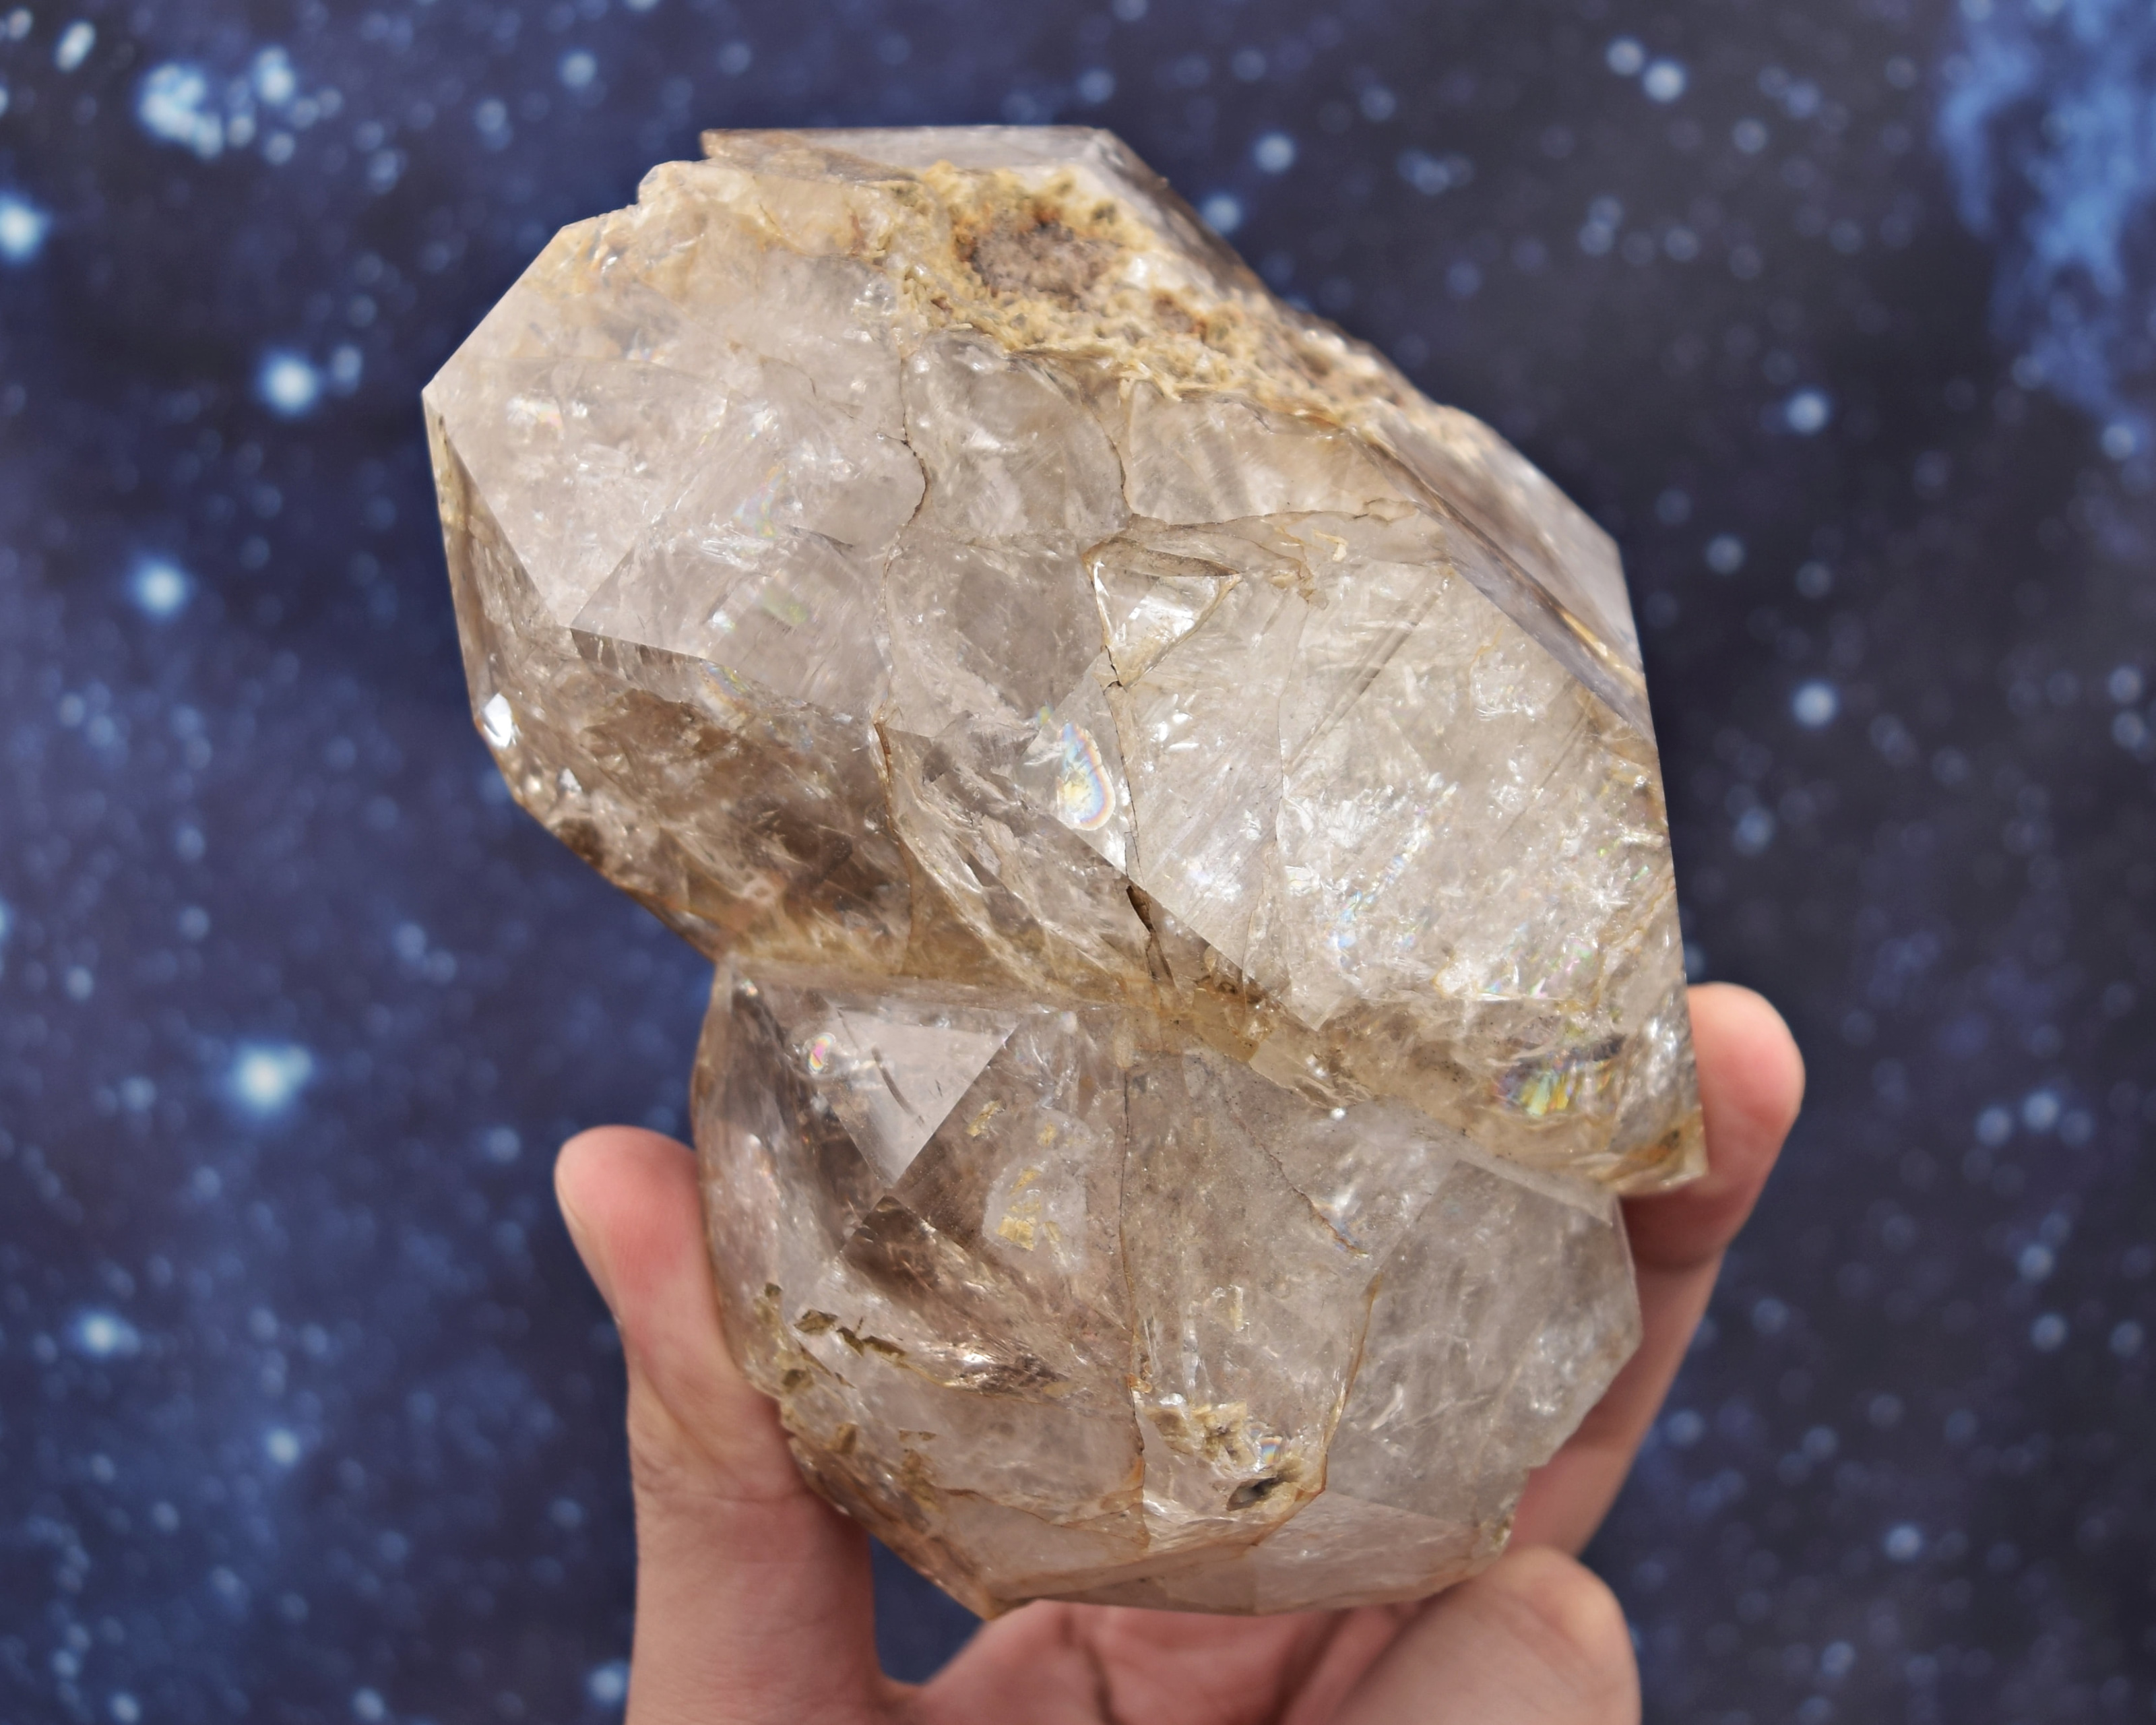 Large Herkimer diamond quartz